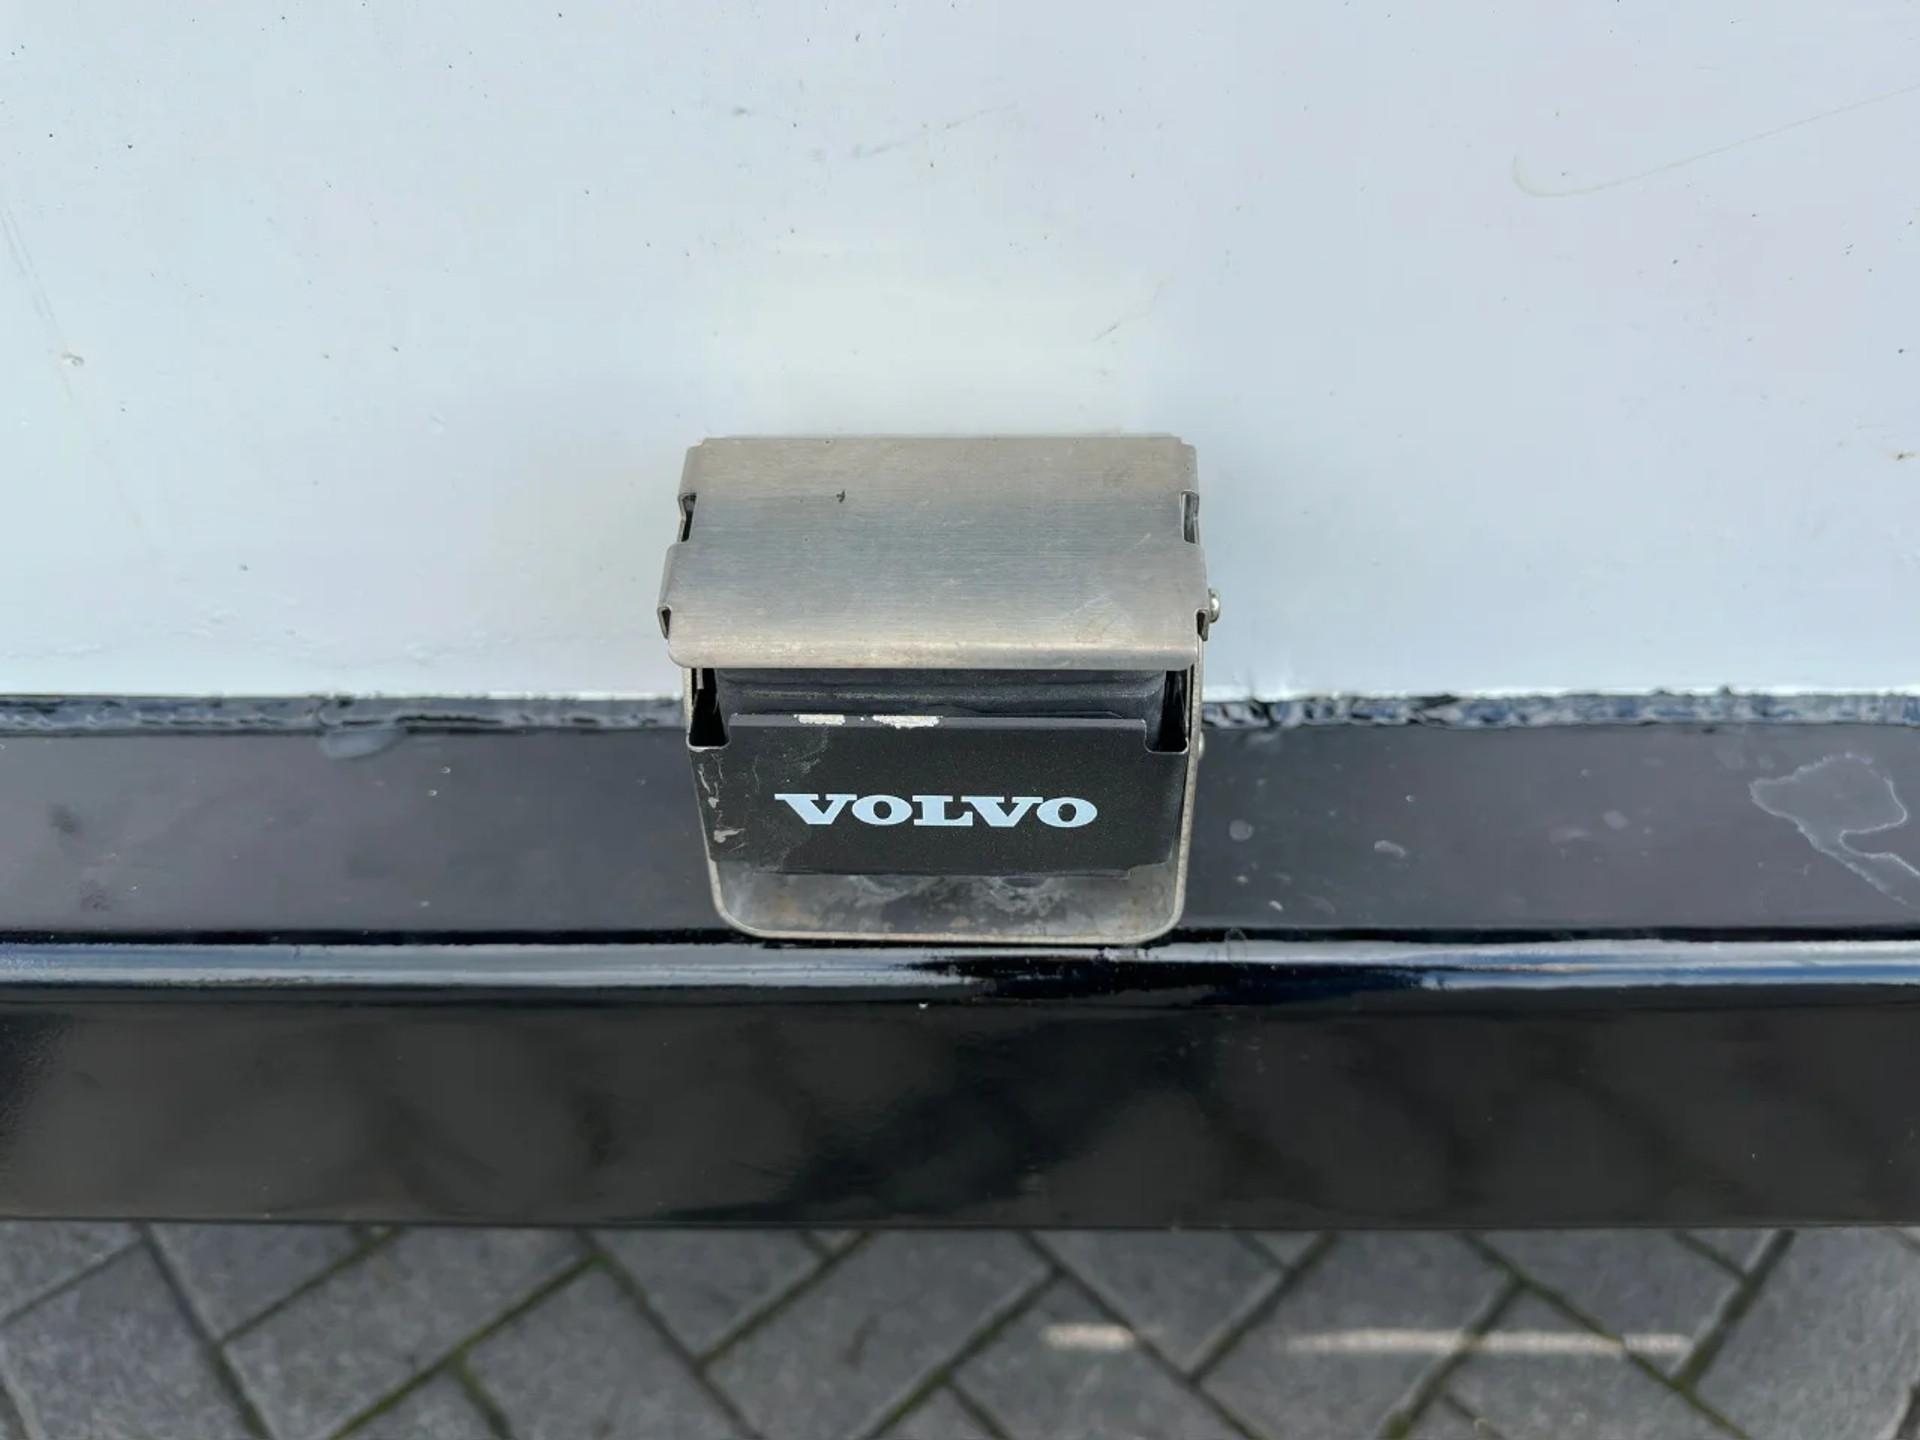 Foto 16 van Volvo FM 450 8X2 MET FASSI F99RA.2.28 XHE-DYNAMIC + JIB L616 KRAAN/KRAN/CRANE/GRUA